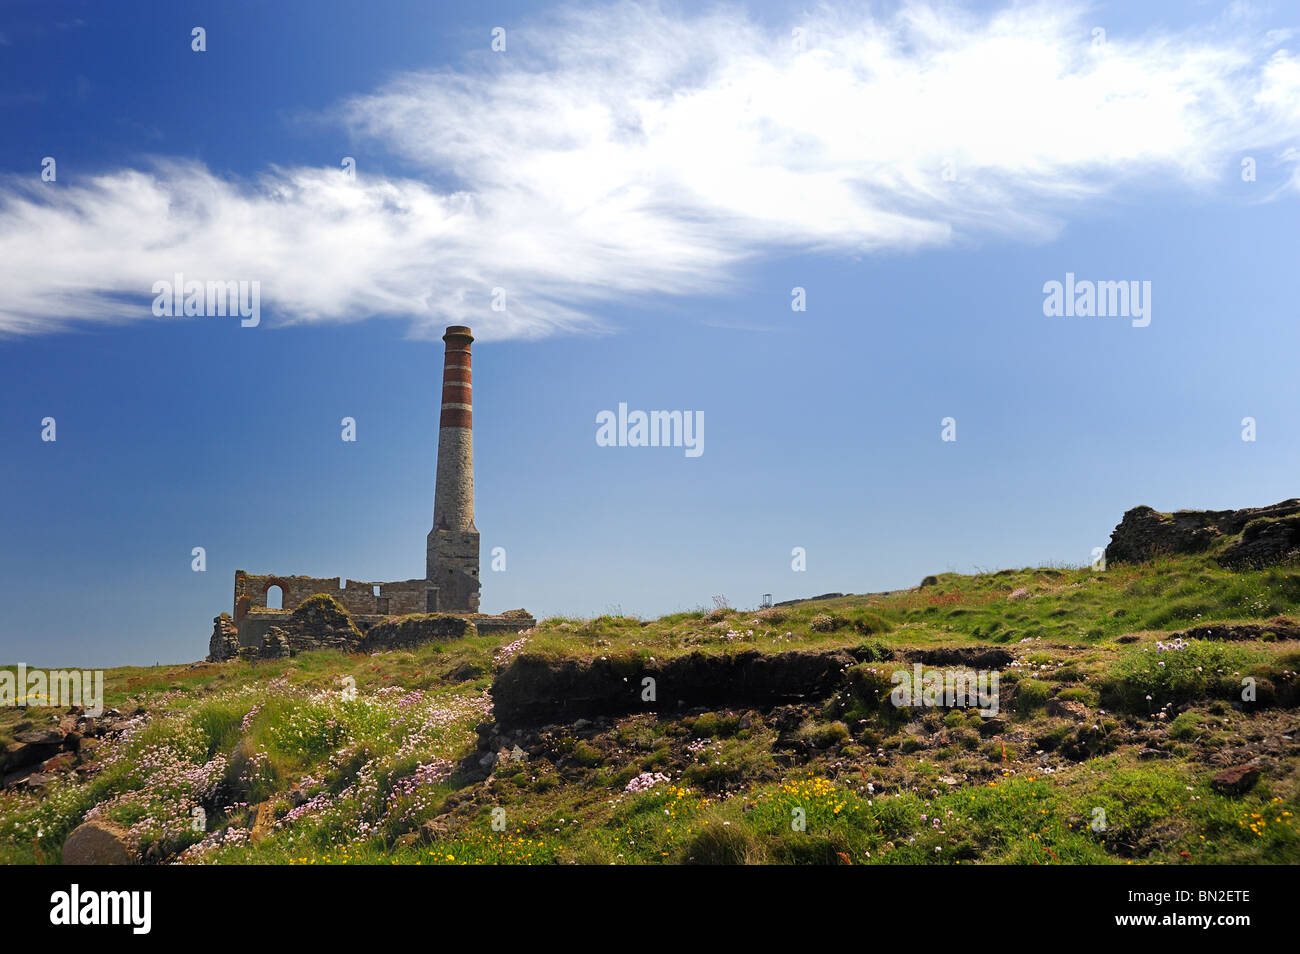 Una chimenea de una antigua mina de estaño de Cornualles parece que sigue fumando con una nube pasajera Foto de stock